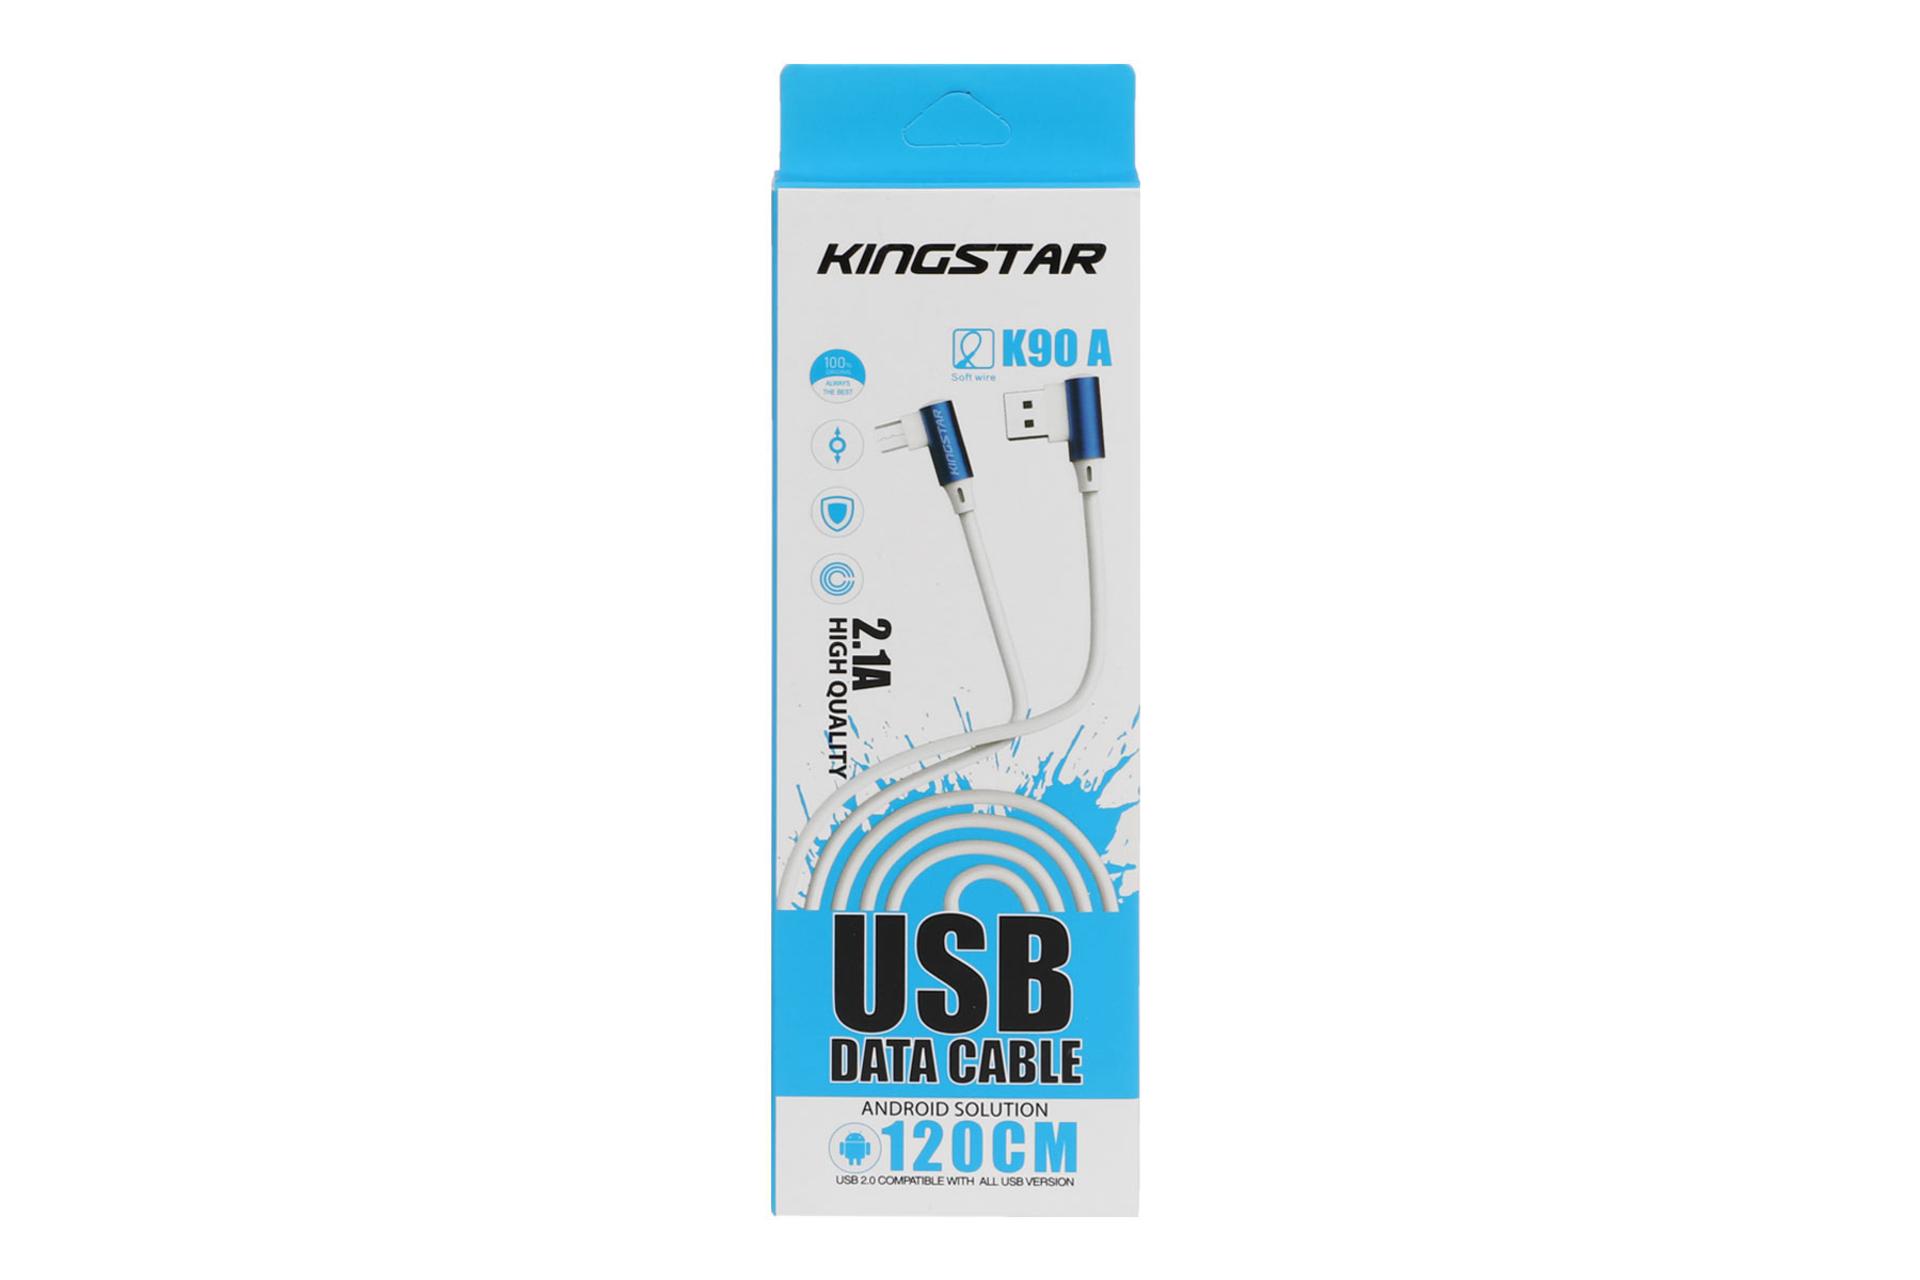 مرجع متخصصين ايران جعبه كابل شارژ USB كينگ استار Type-A به Micro-USB مدل K90A با طول 1.1 متر